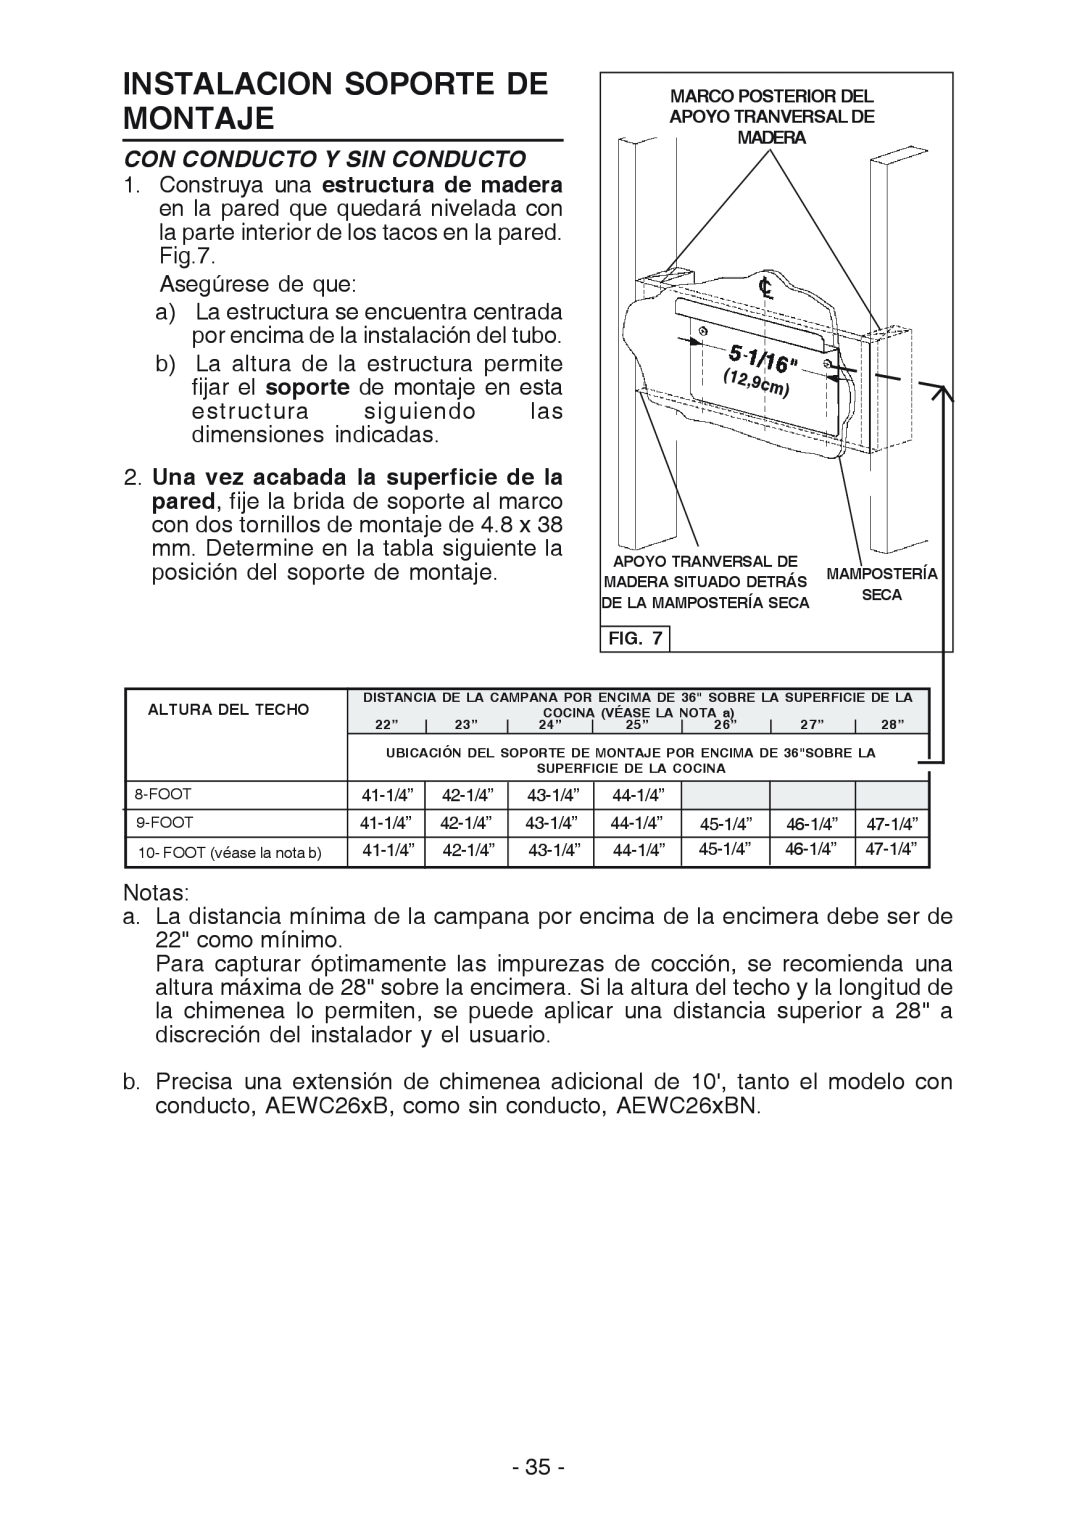 Broan WC26I manual Instalacion Soporte De Montaje, Con Conducto Y Sin Conducto 